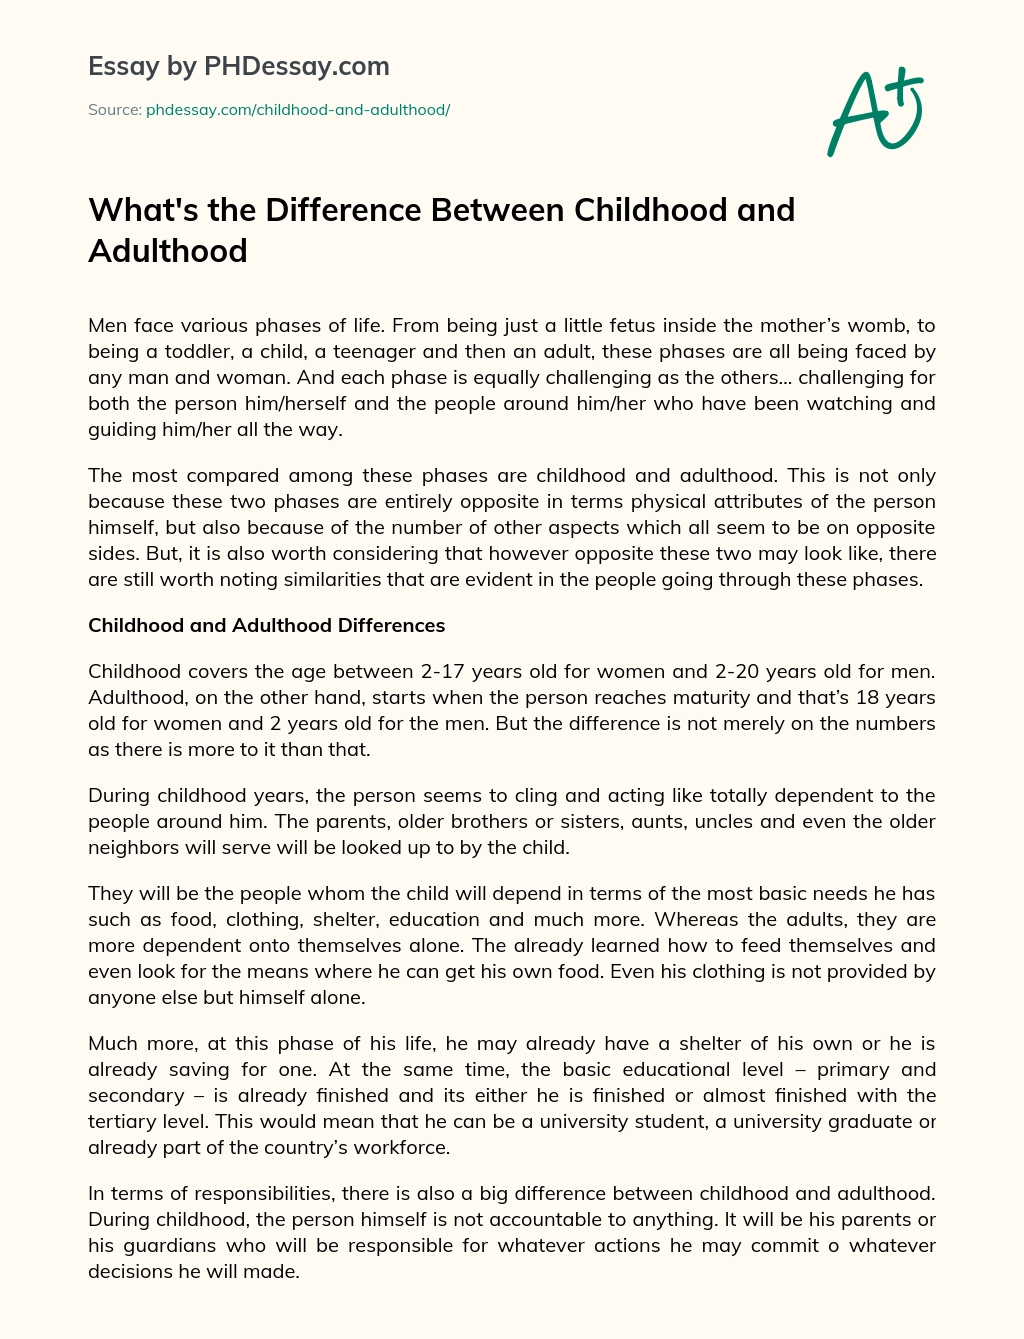 Cuál es la Diferencia entre la Infancia y la Edad adulta ensayo